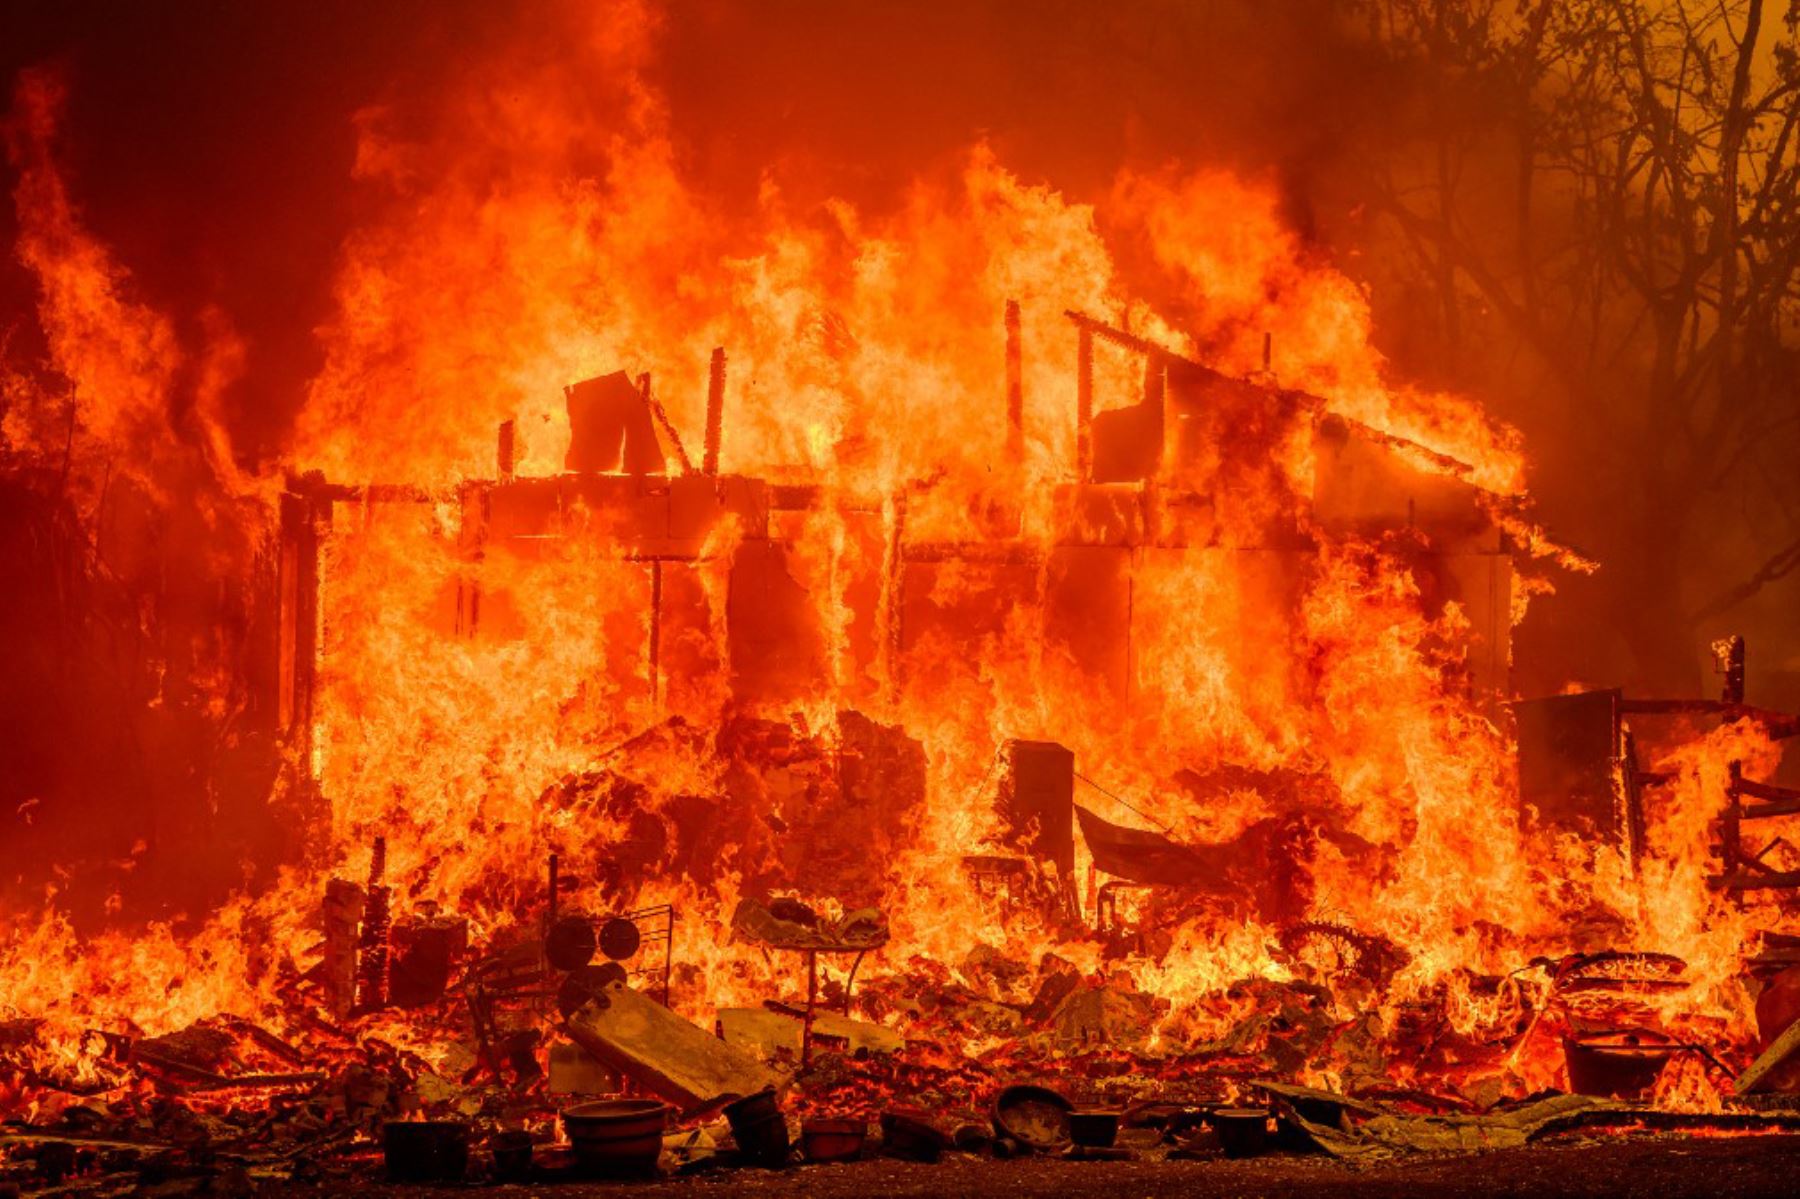 El incendio Thompson ha consumido más de 1.200 hectáreas desde que inició el martes, de acuerdo con datos oficiales. Las autoridades emitieron órdenes de evacuación para unas 13.000 personas en el condado de Butte. Foto: AFP